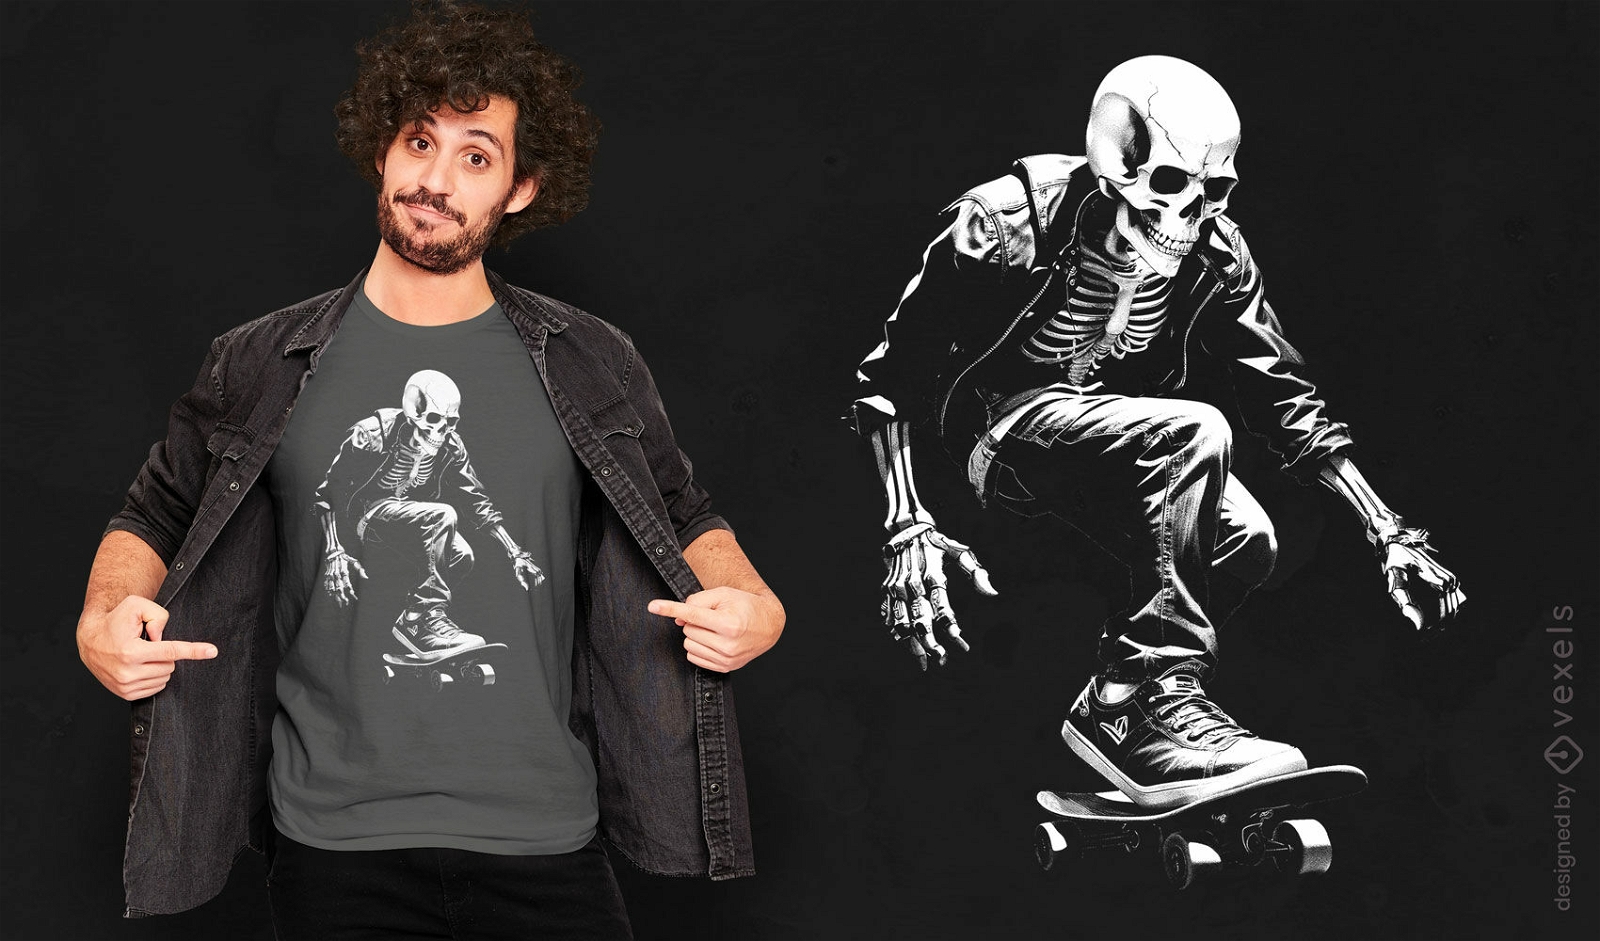 Dise?o de camiseta genial de skater esqueleto.